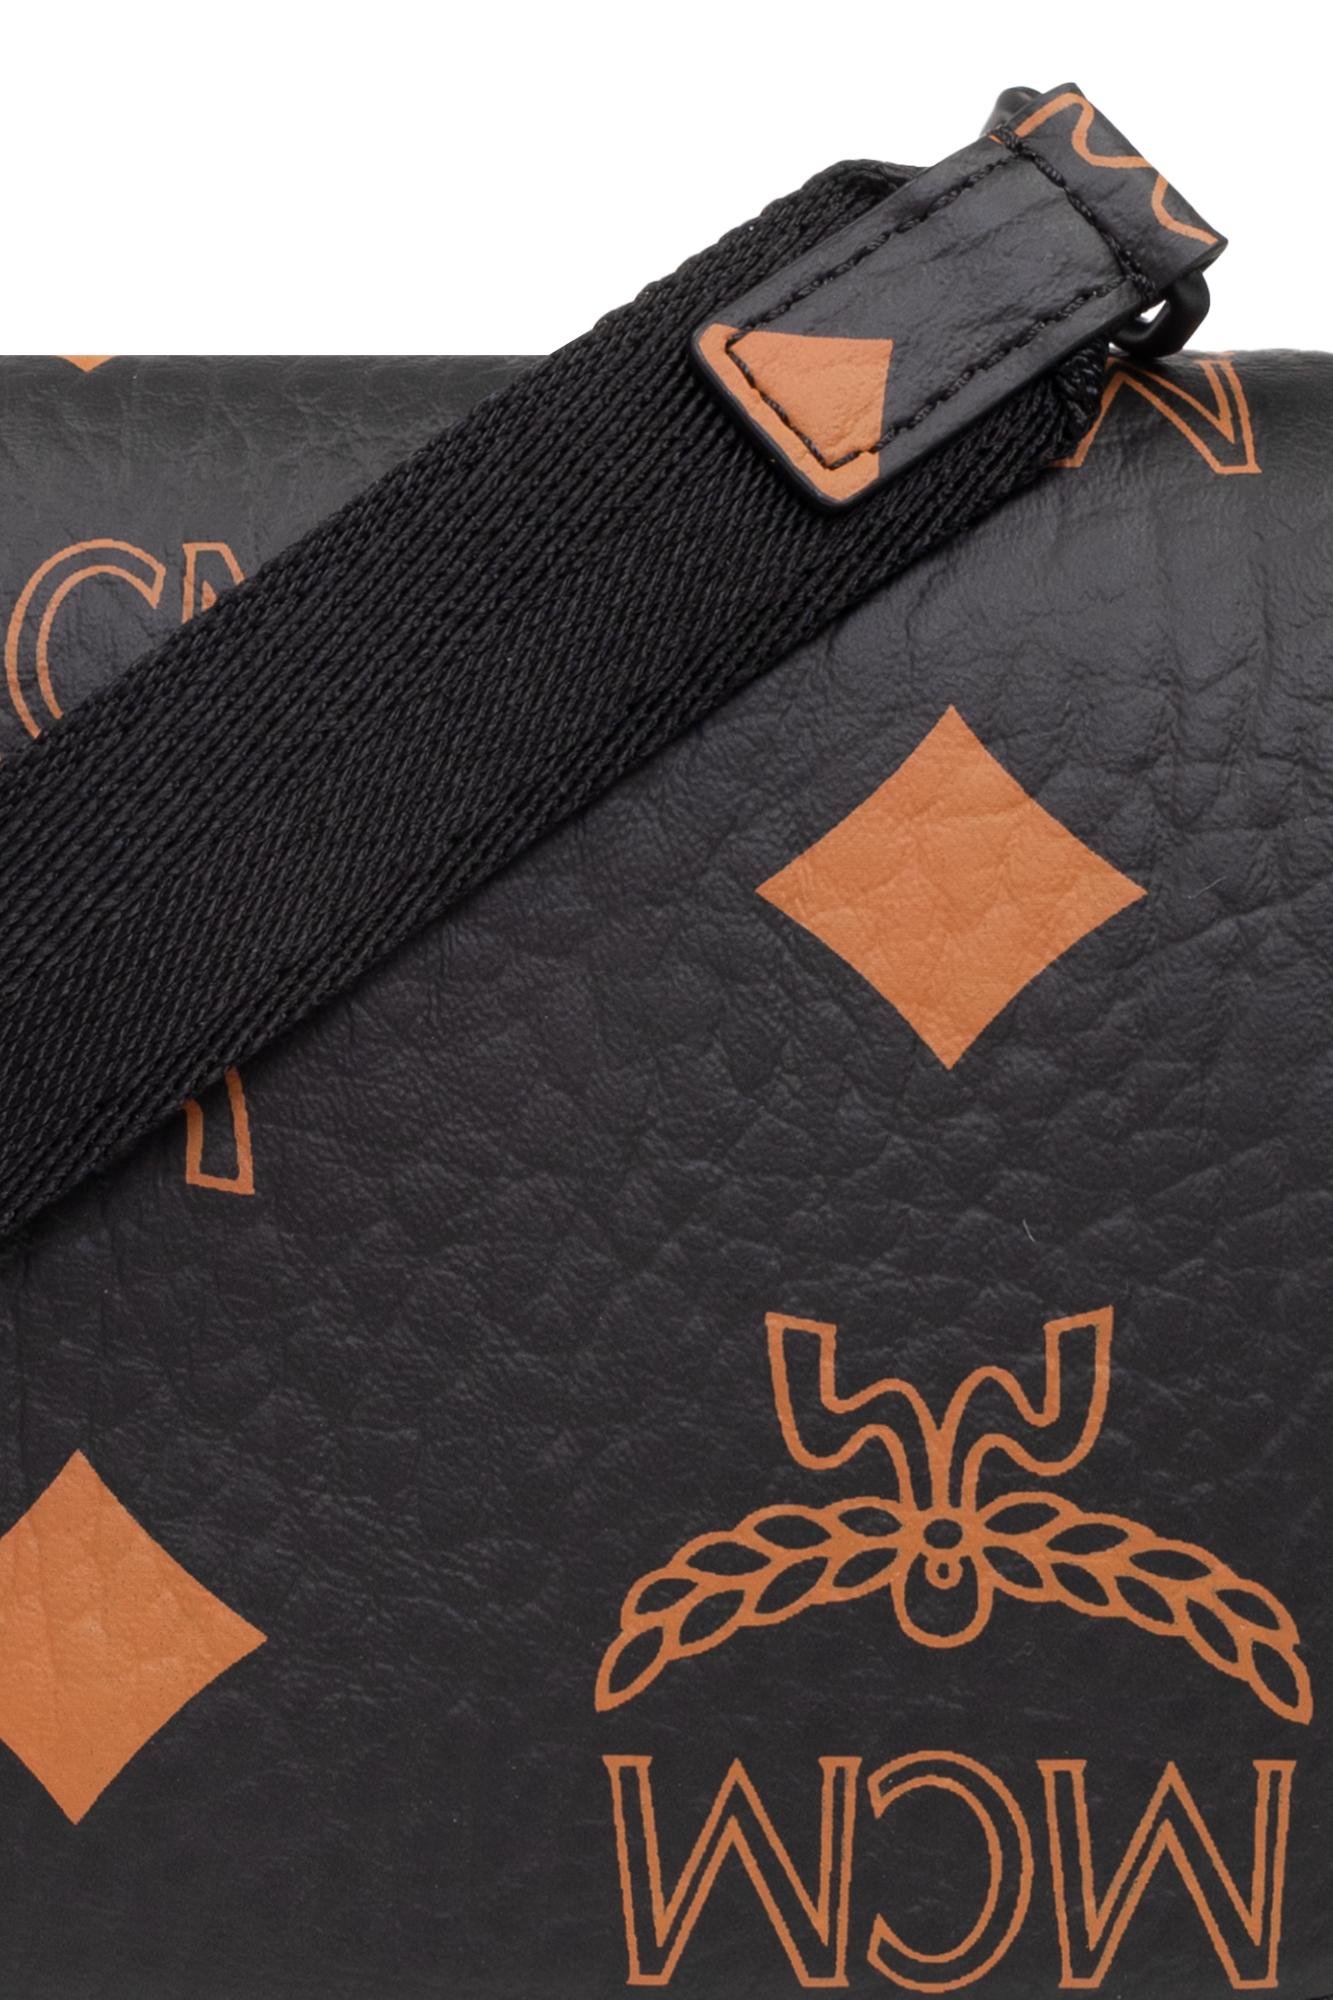 MCM Quilted Leather Monogram Shoulder Bag - Black Shoulder Bags